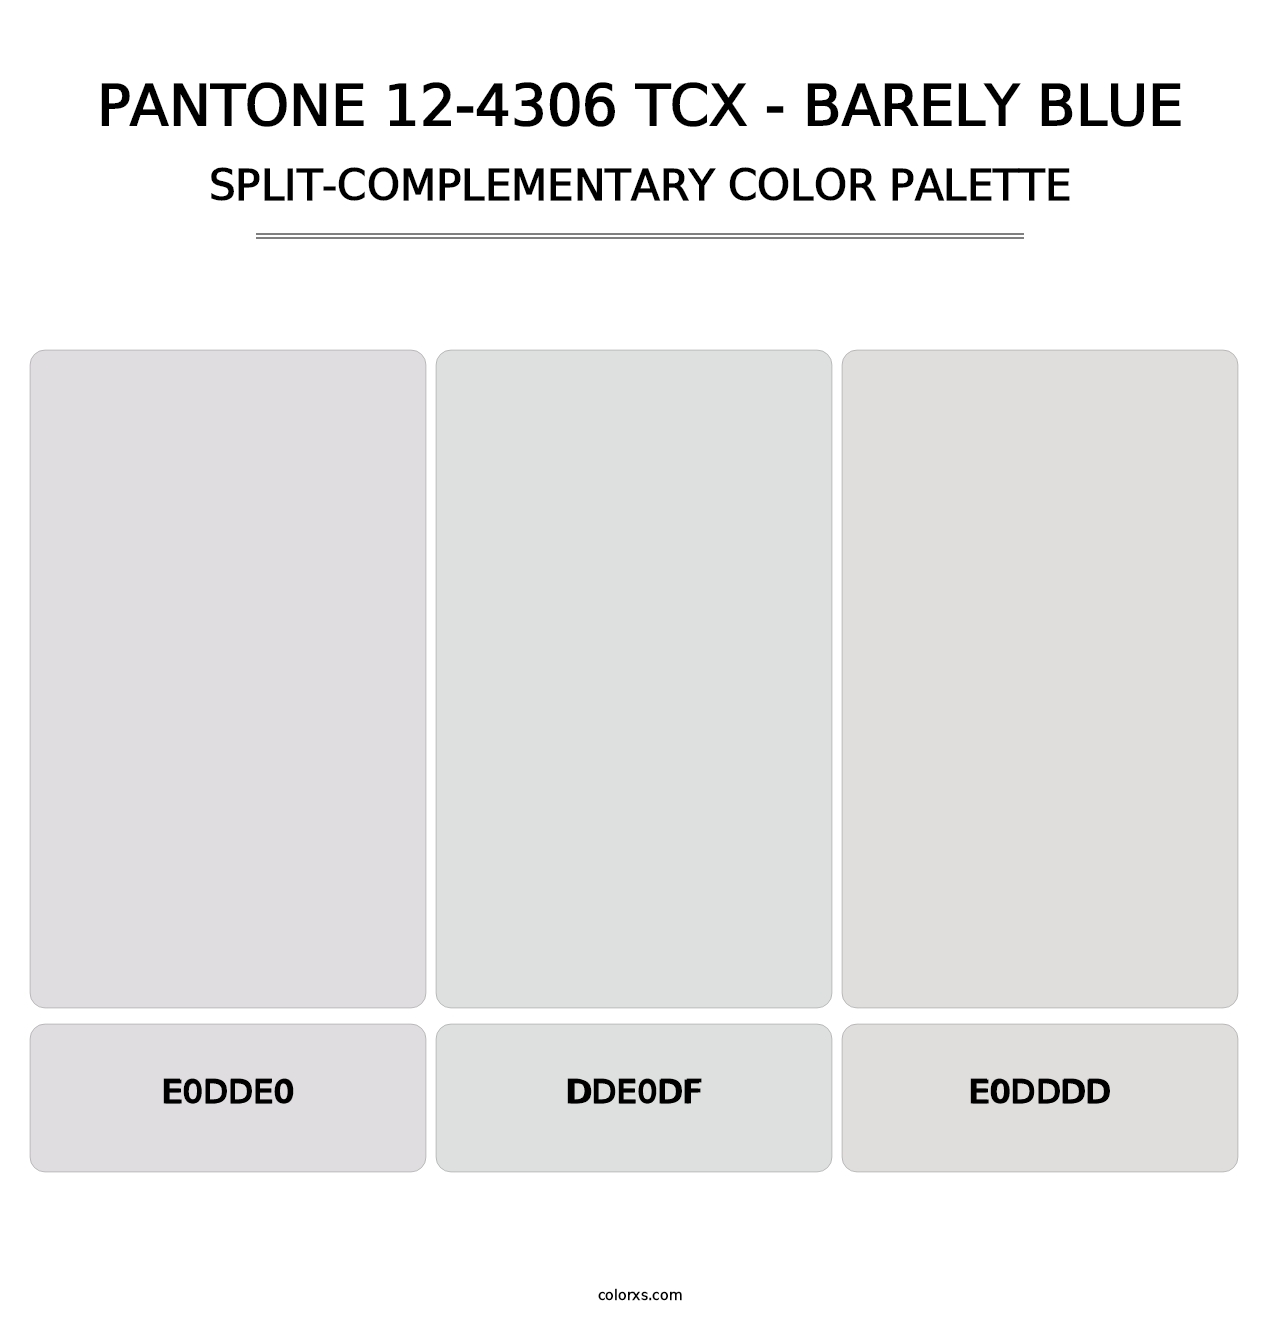 PANTONE 12-4306 TCX - Barely Blue - Split-Complementary Color Palette